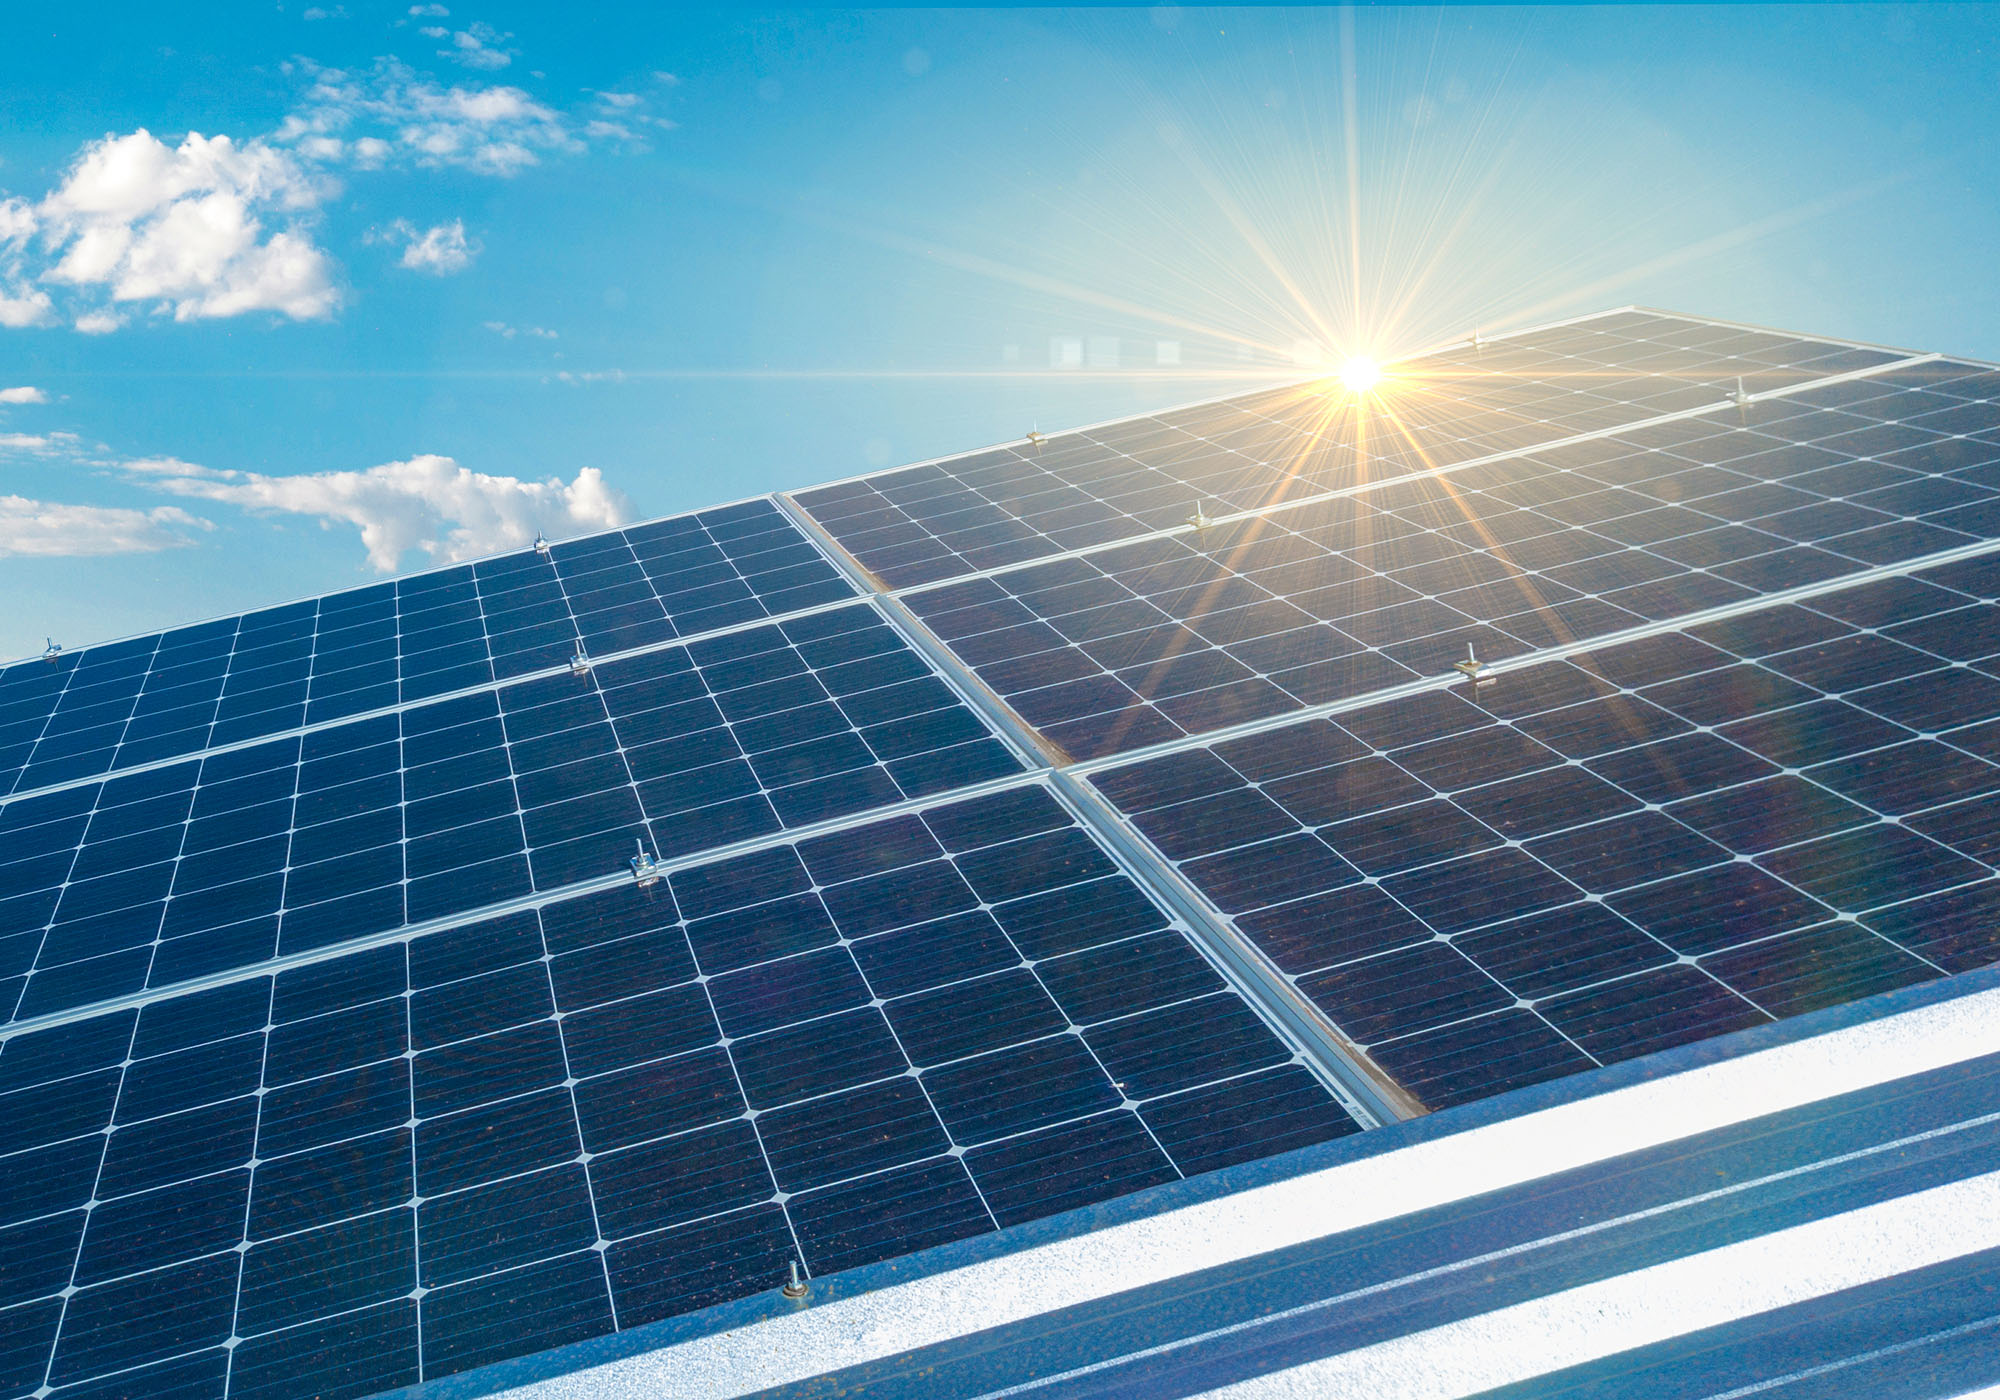 Nutzen Sie die Energie der Sonne mit einer eigenen Photovoltaikanlage.